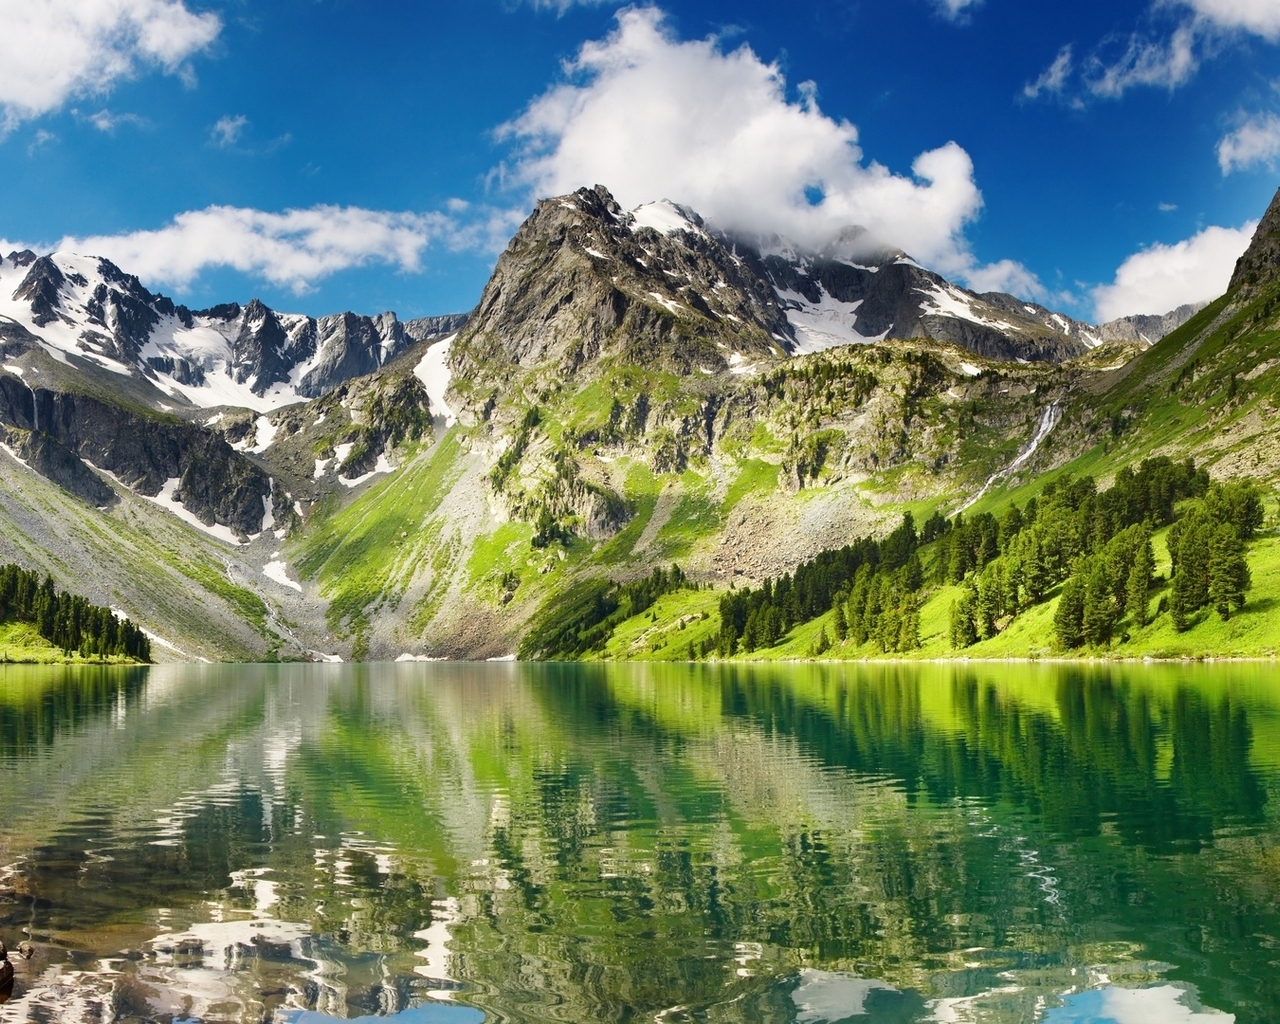 Image: Lake, mountains, grass